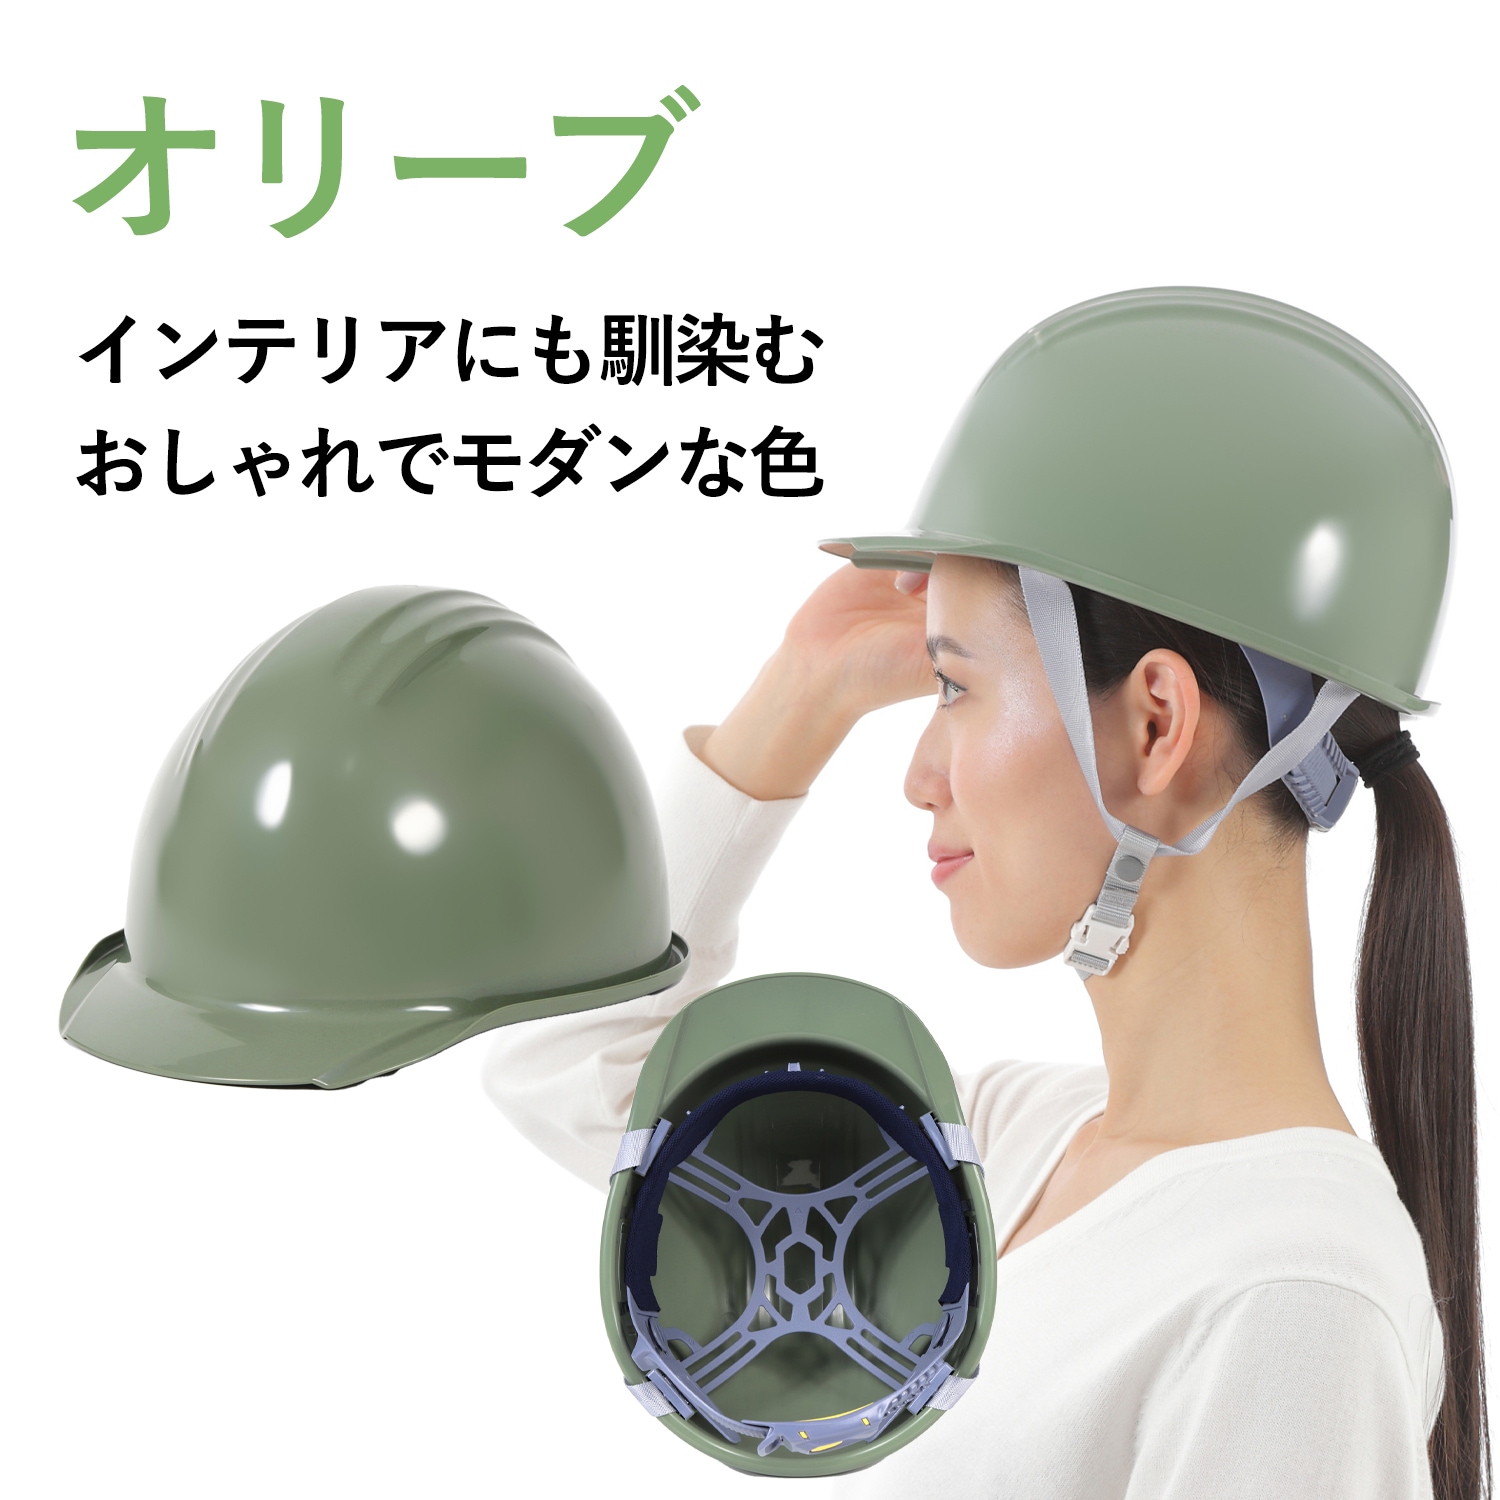 加賀産業ヘルメットカラバリ